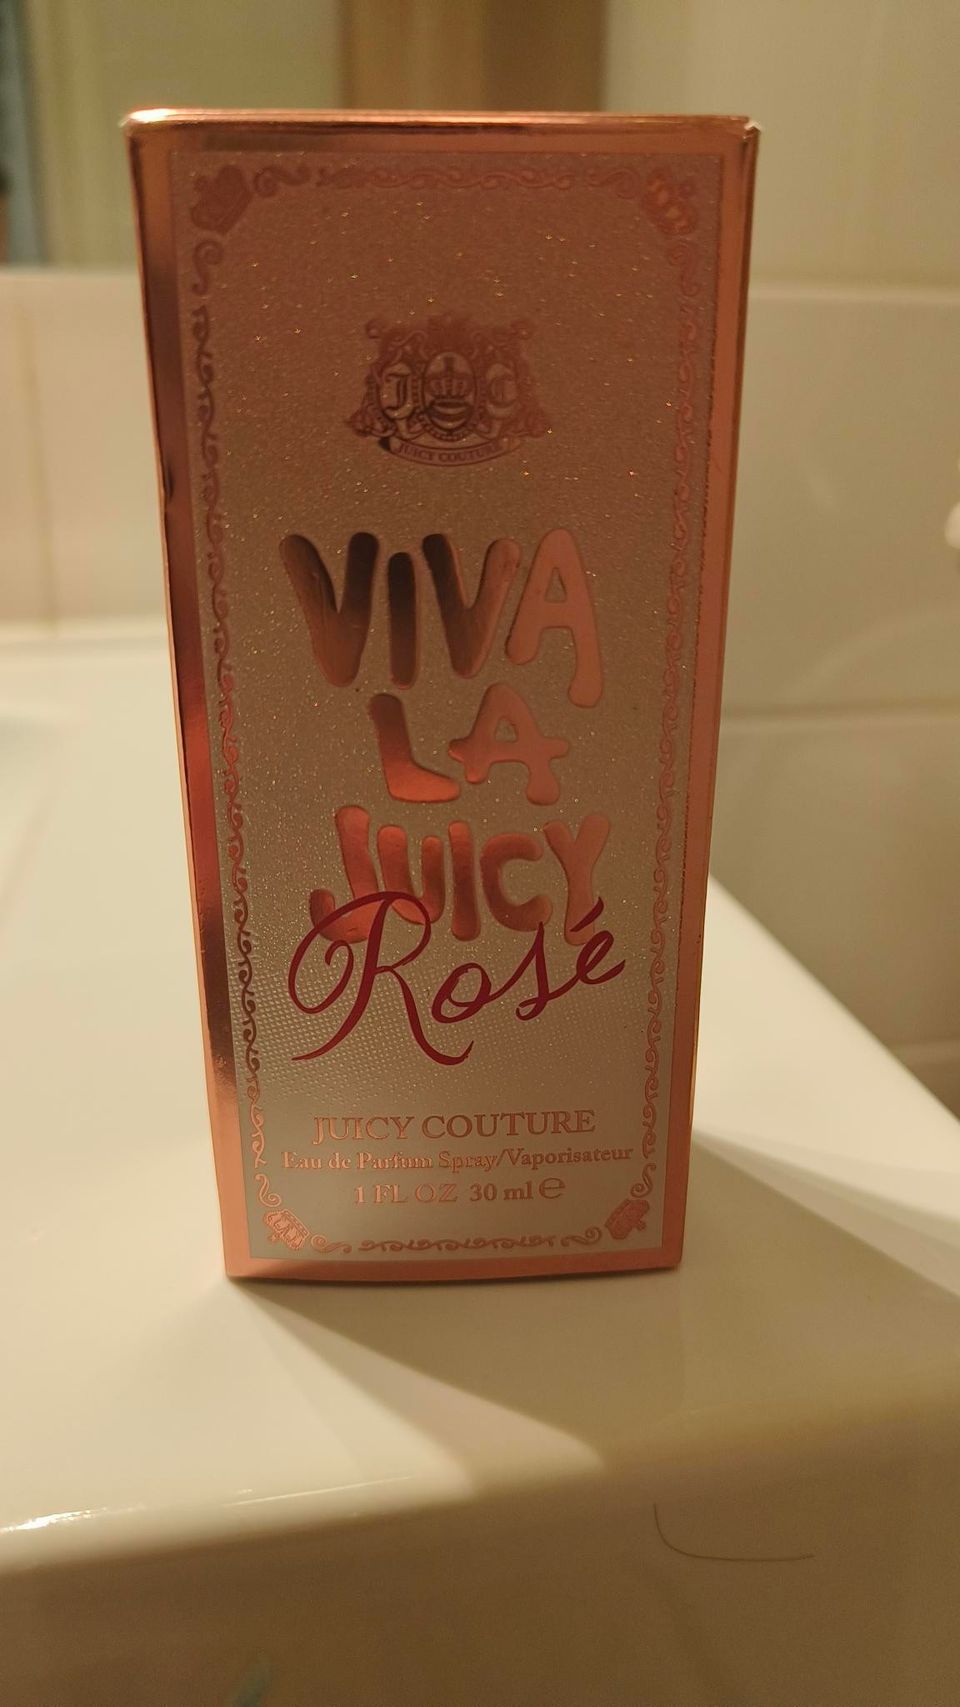 Viva la juicy, Rosé